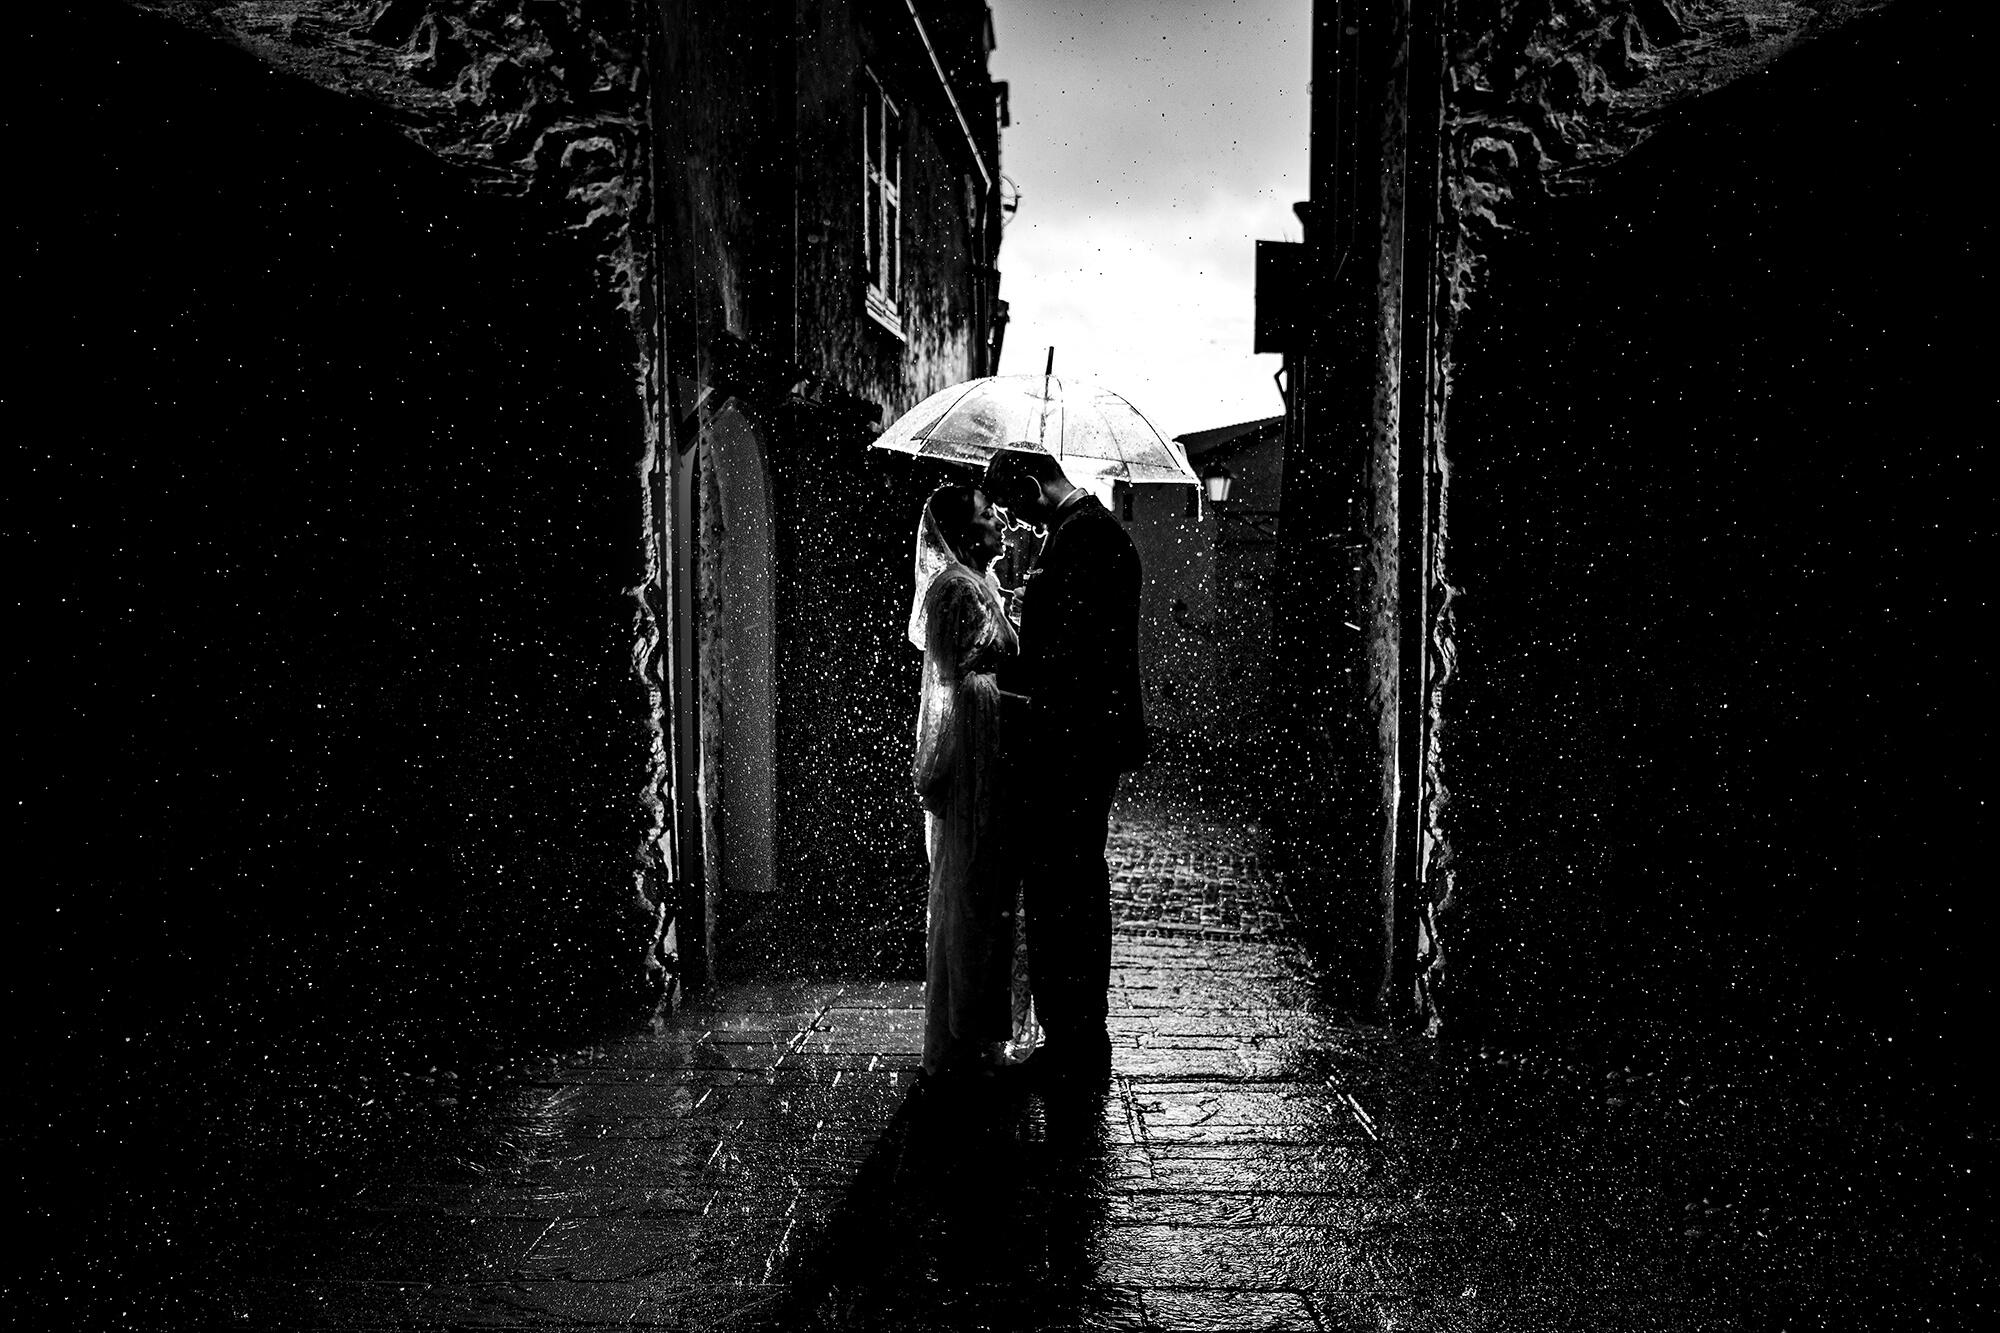 Una foto di matrimonio con la pioggia, ogni tanto succede e cerchiamo di realizzare delle belle fotografie.